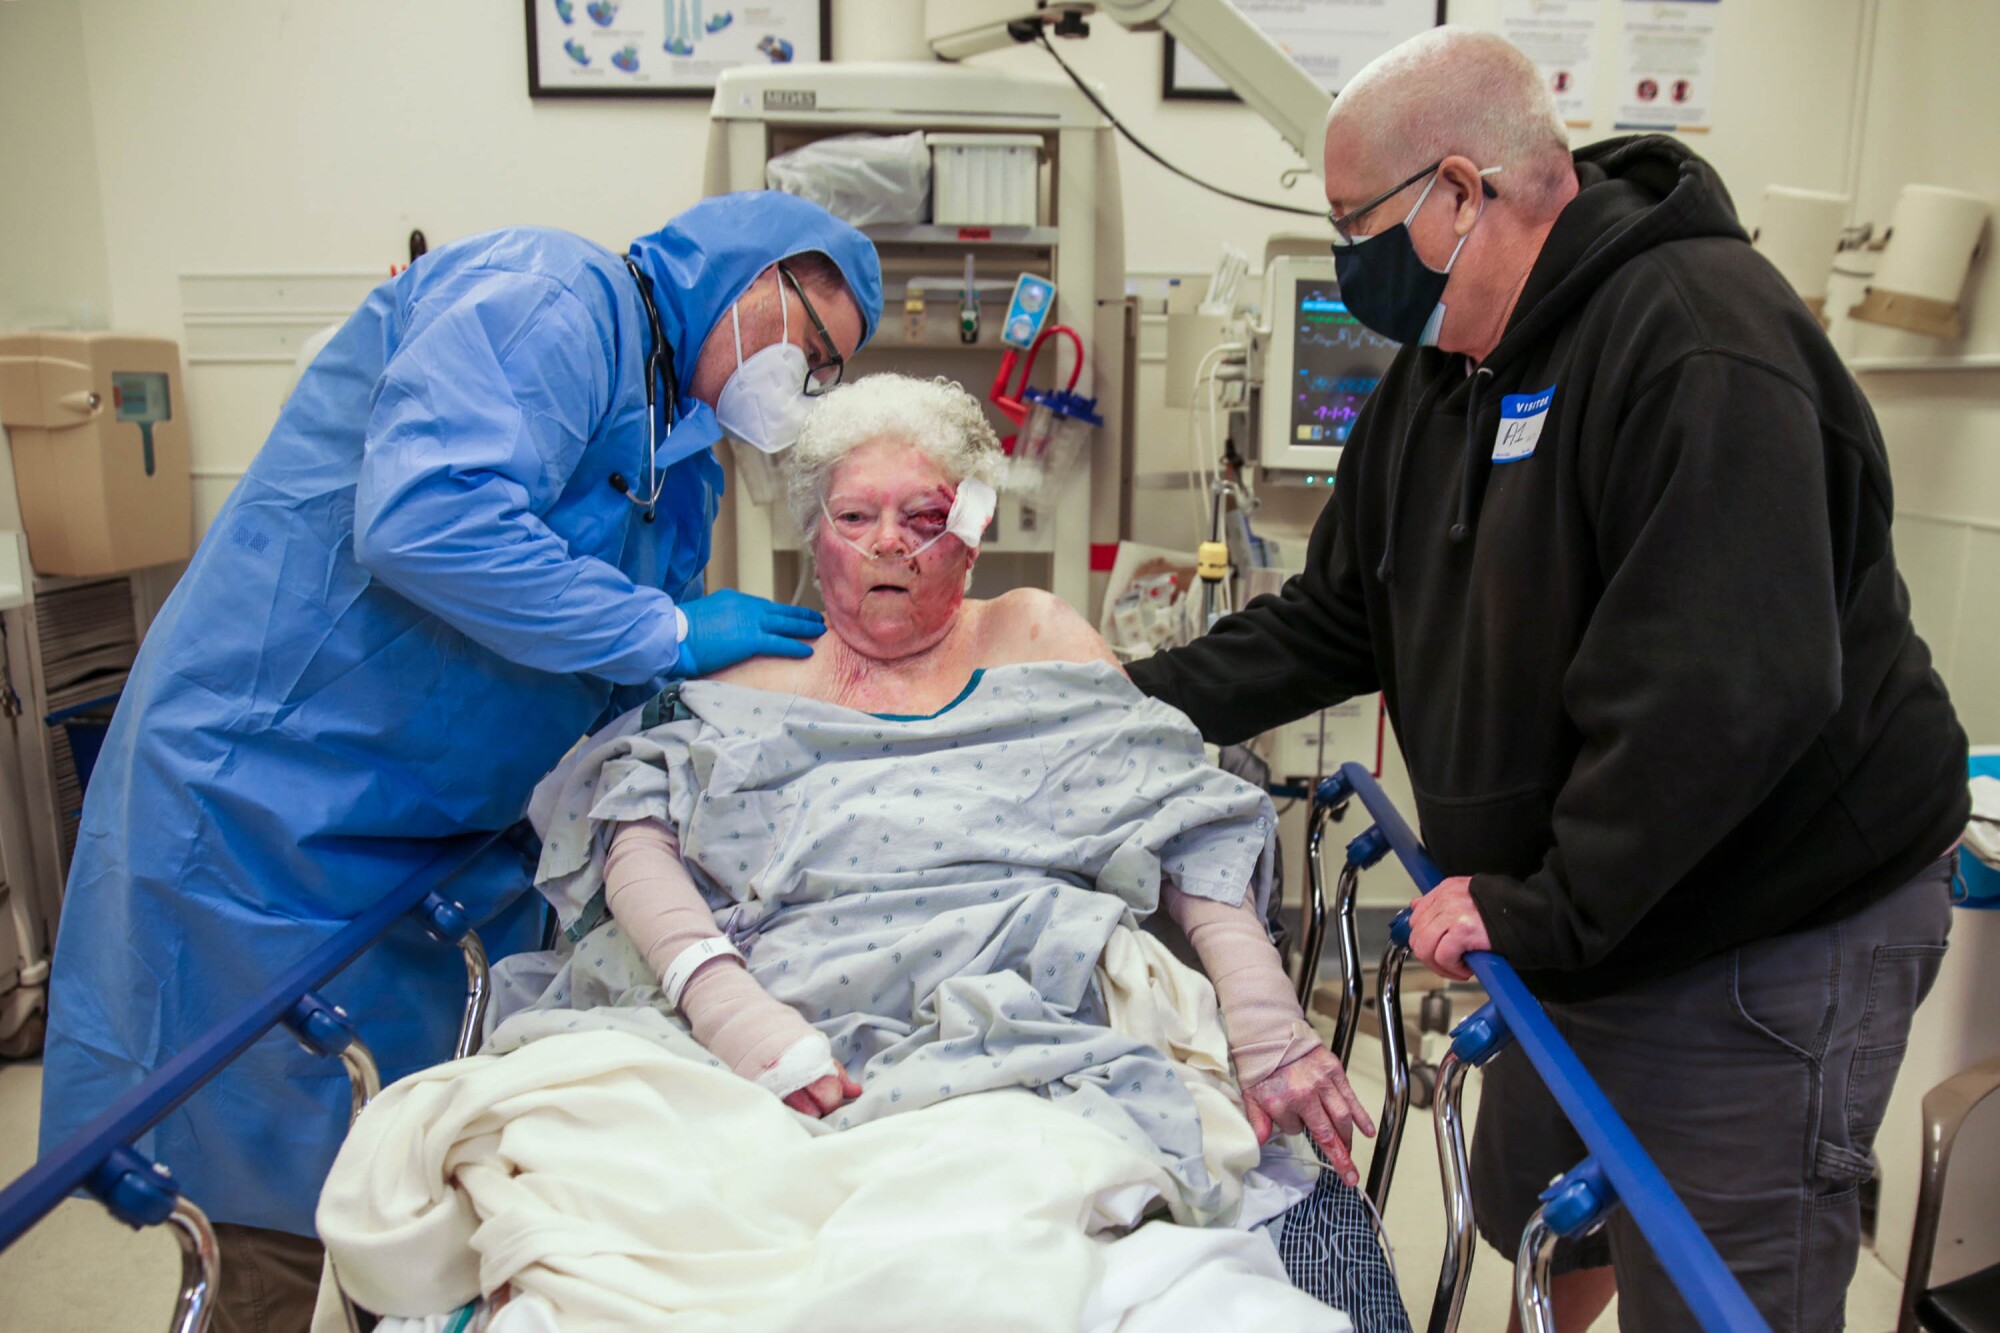 دکتر تروی پنینگتون از زنی که در اثر سقوط زخمی شده مراقبت می کند.